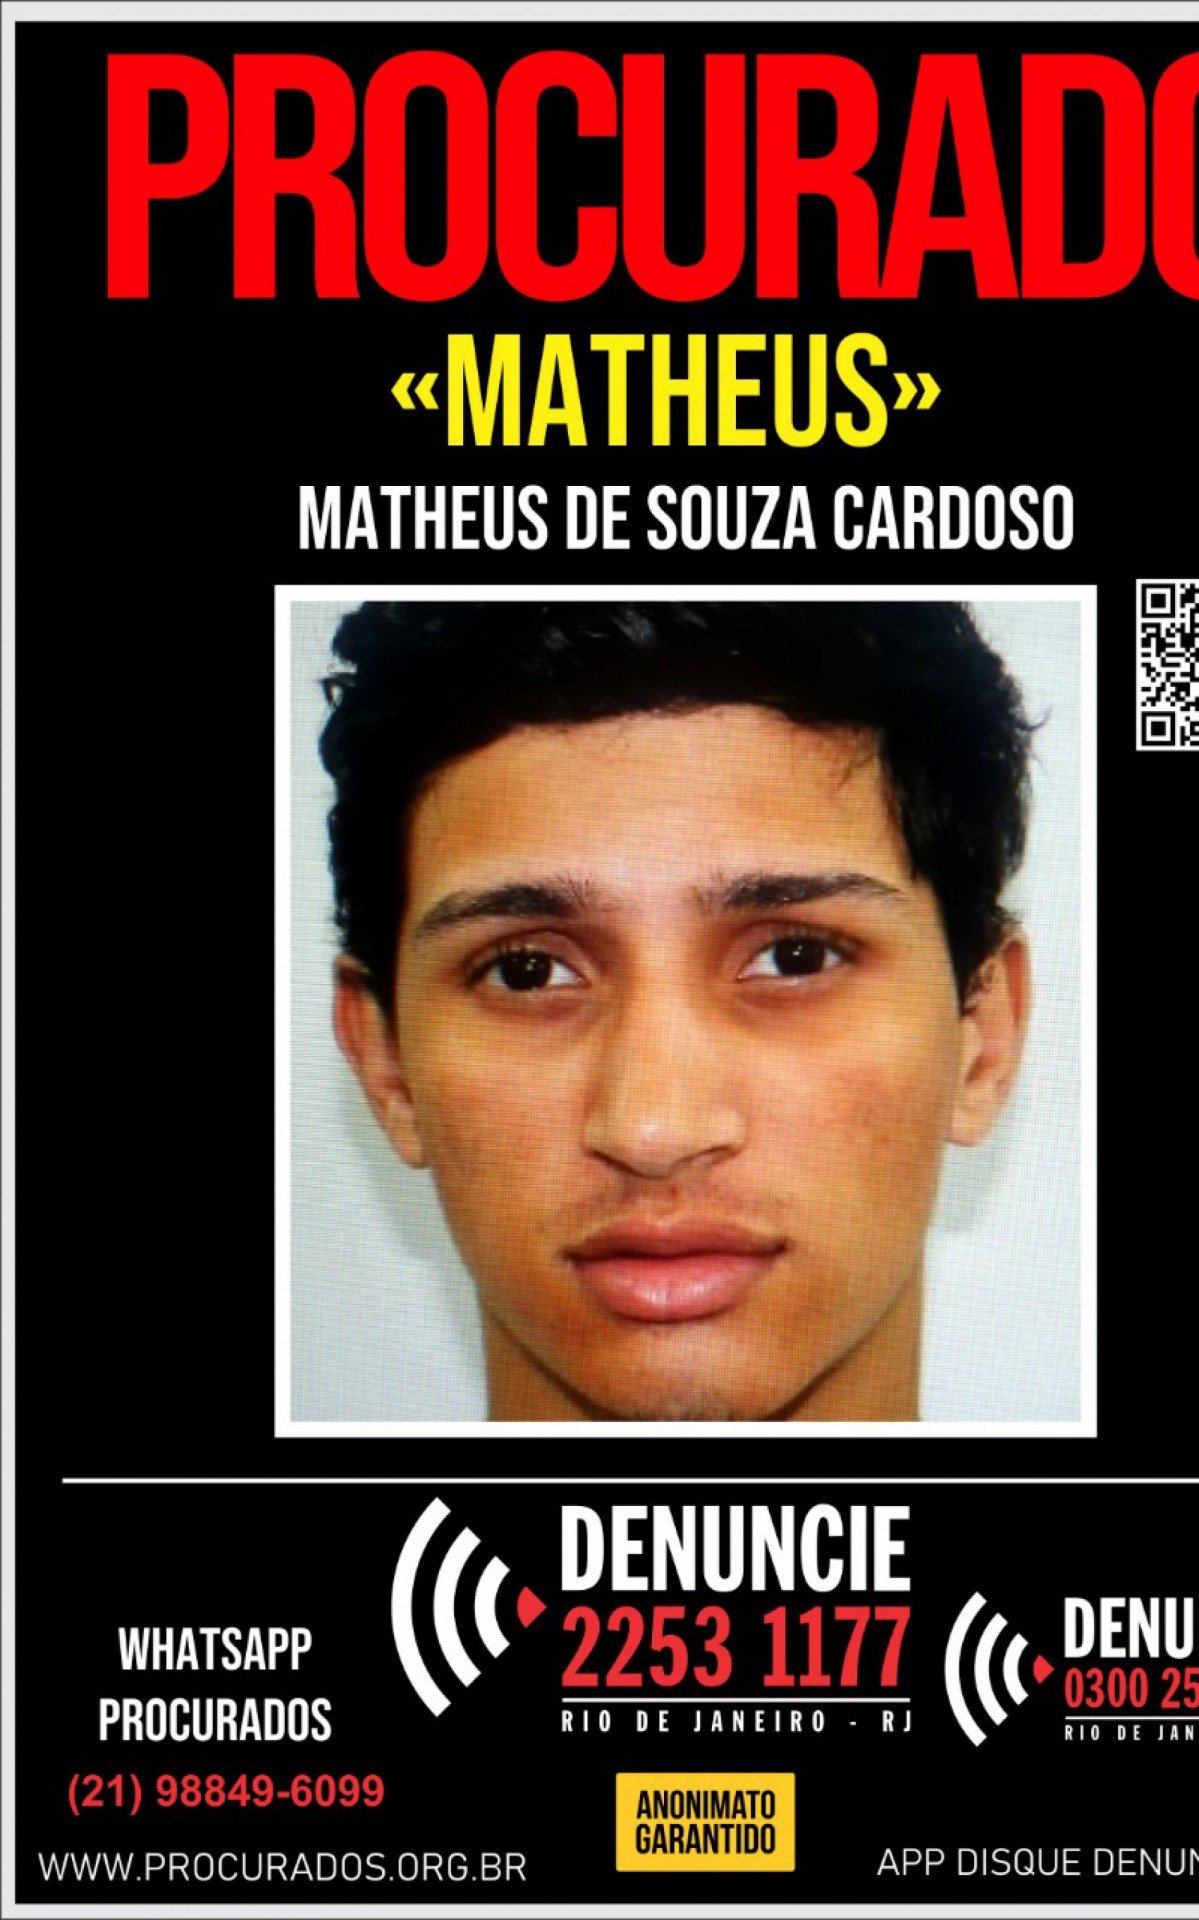 Matheus de Souza Cardoso atacou Luiz Henrique com um canivete - Divulgação/Portal dos Procurados